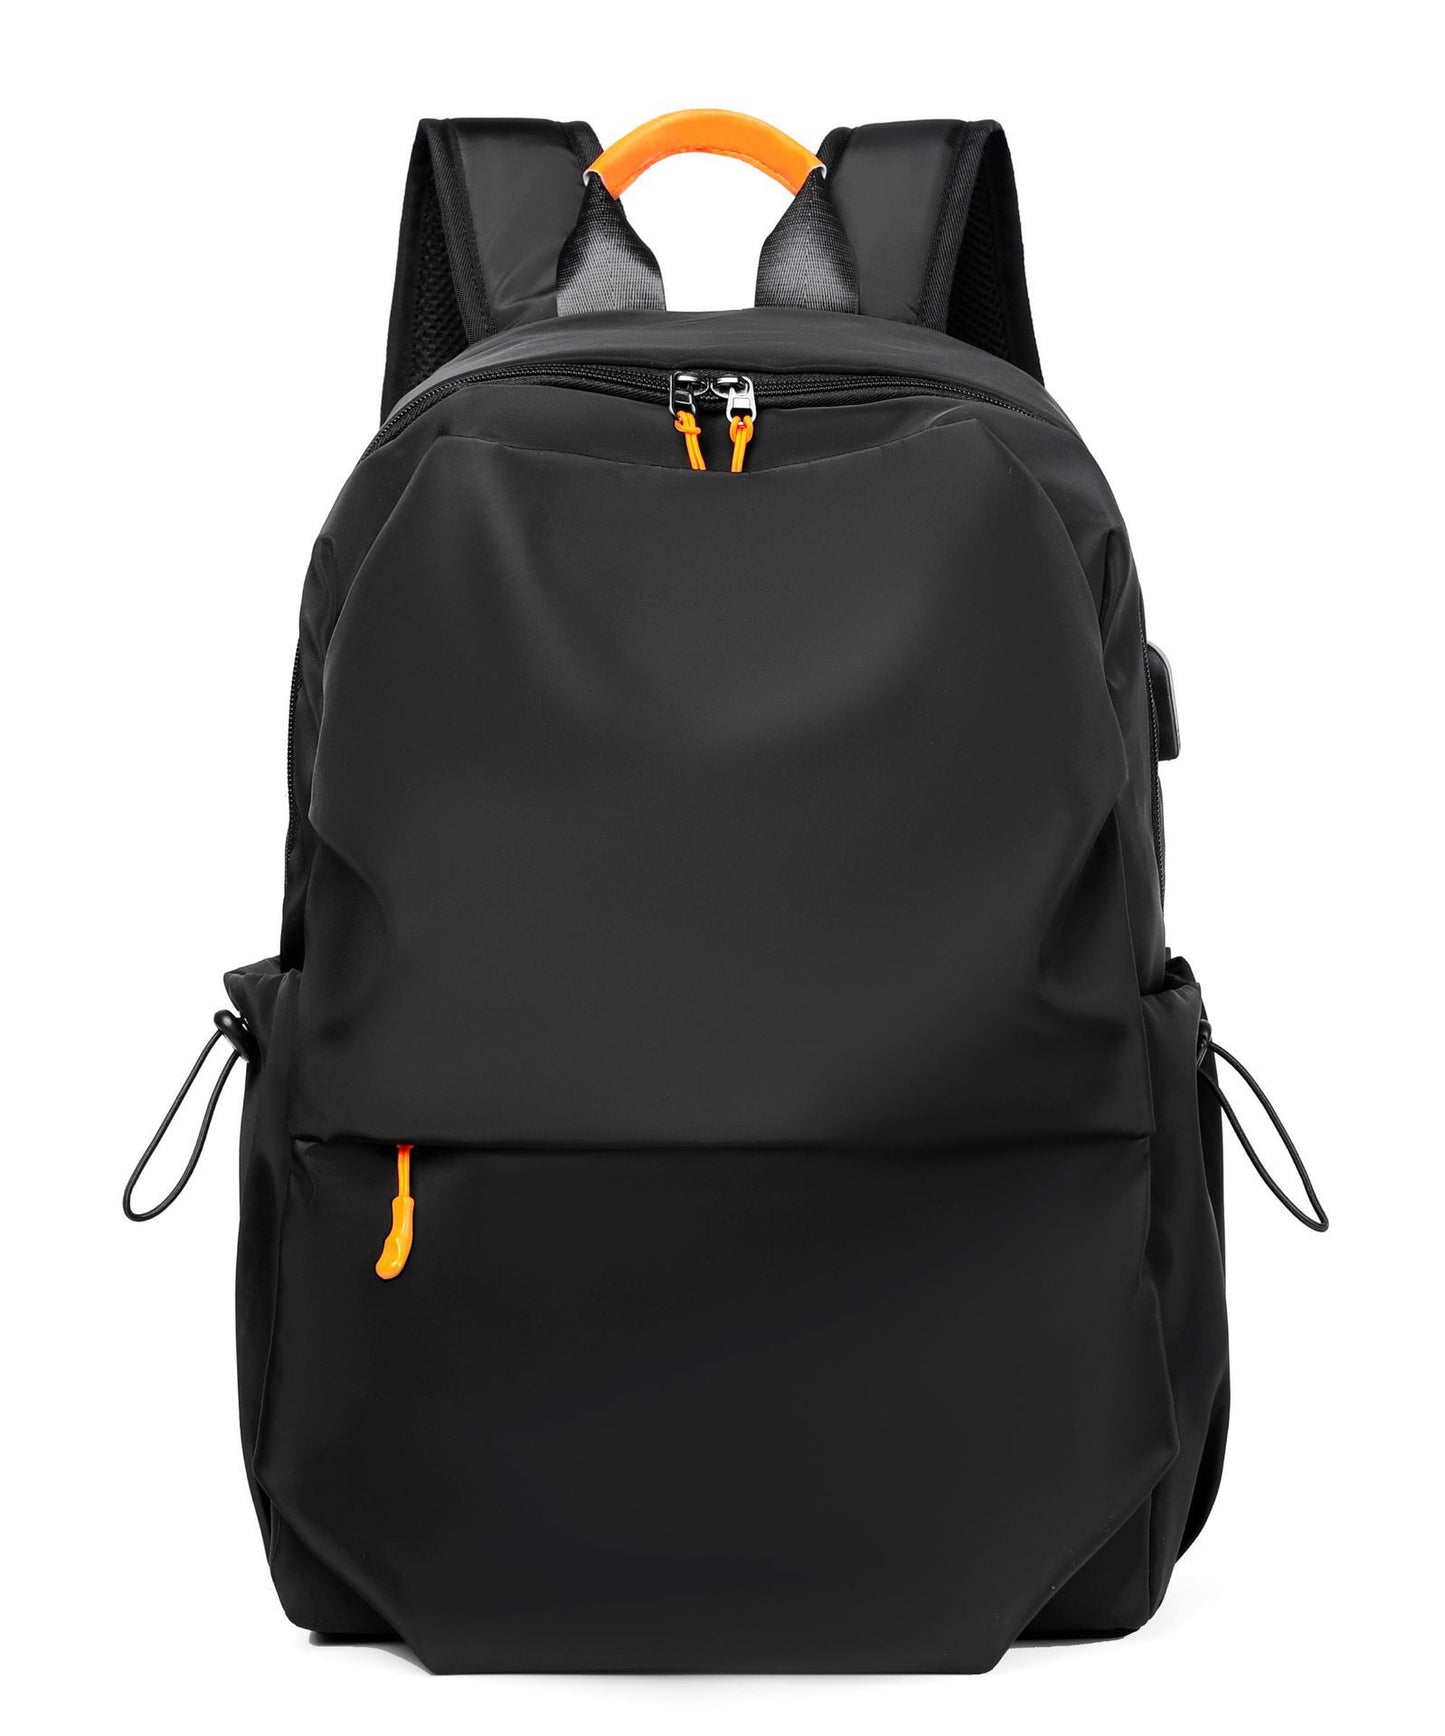 「KS3551」E23.00潮品背包男雙肩包大容量旅行休閒包男女電腦包高中初中大學生書包